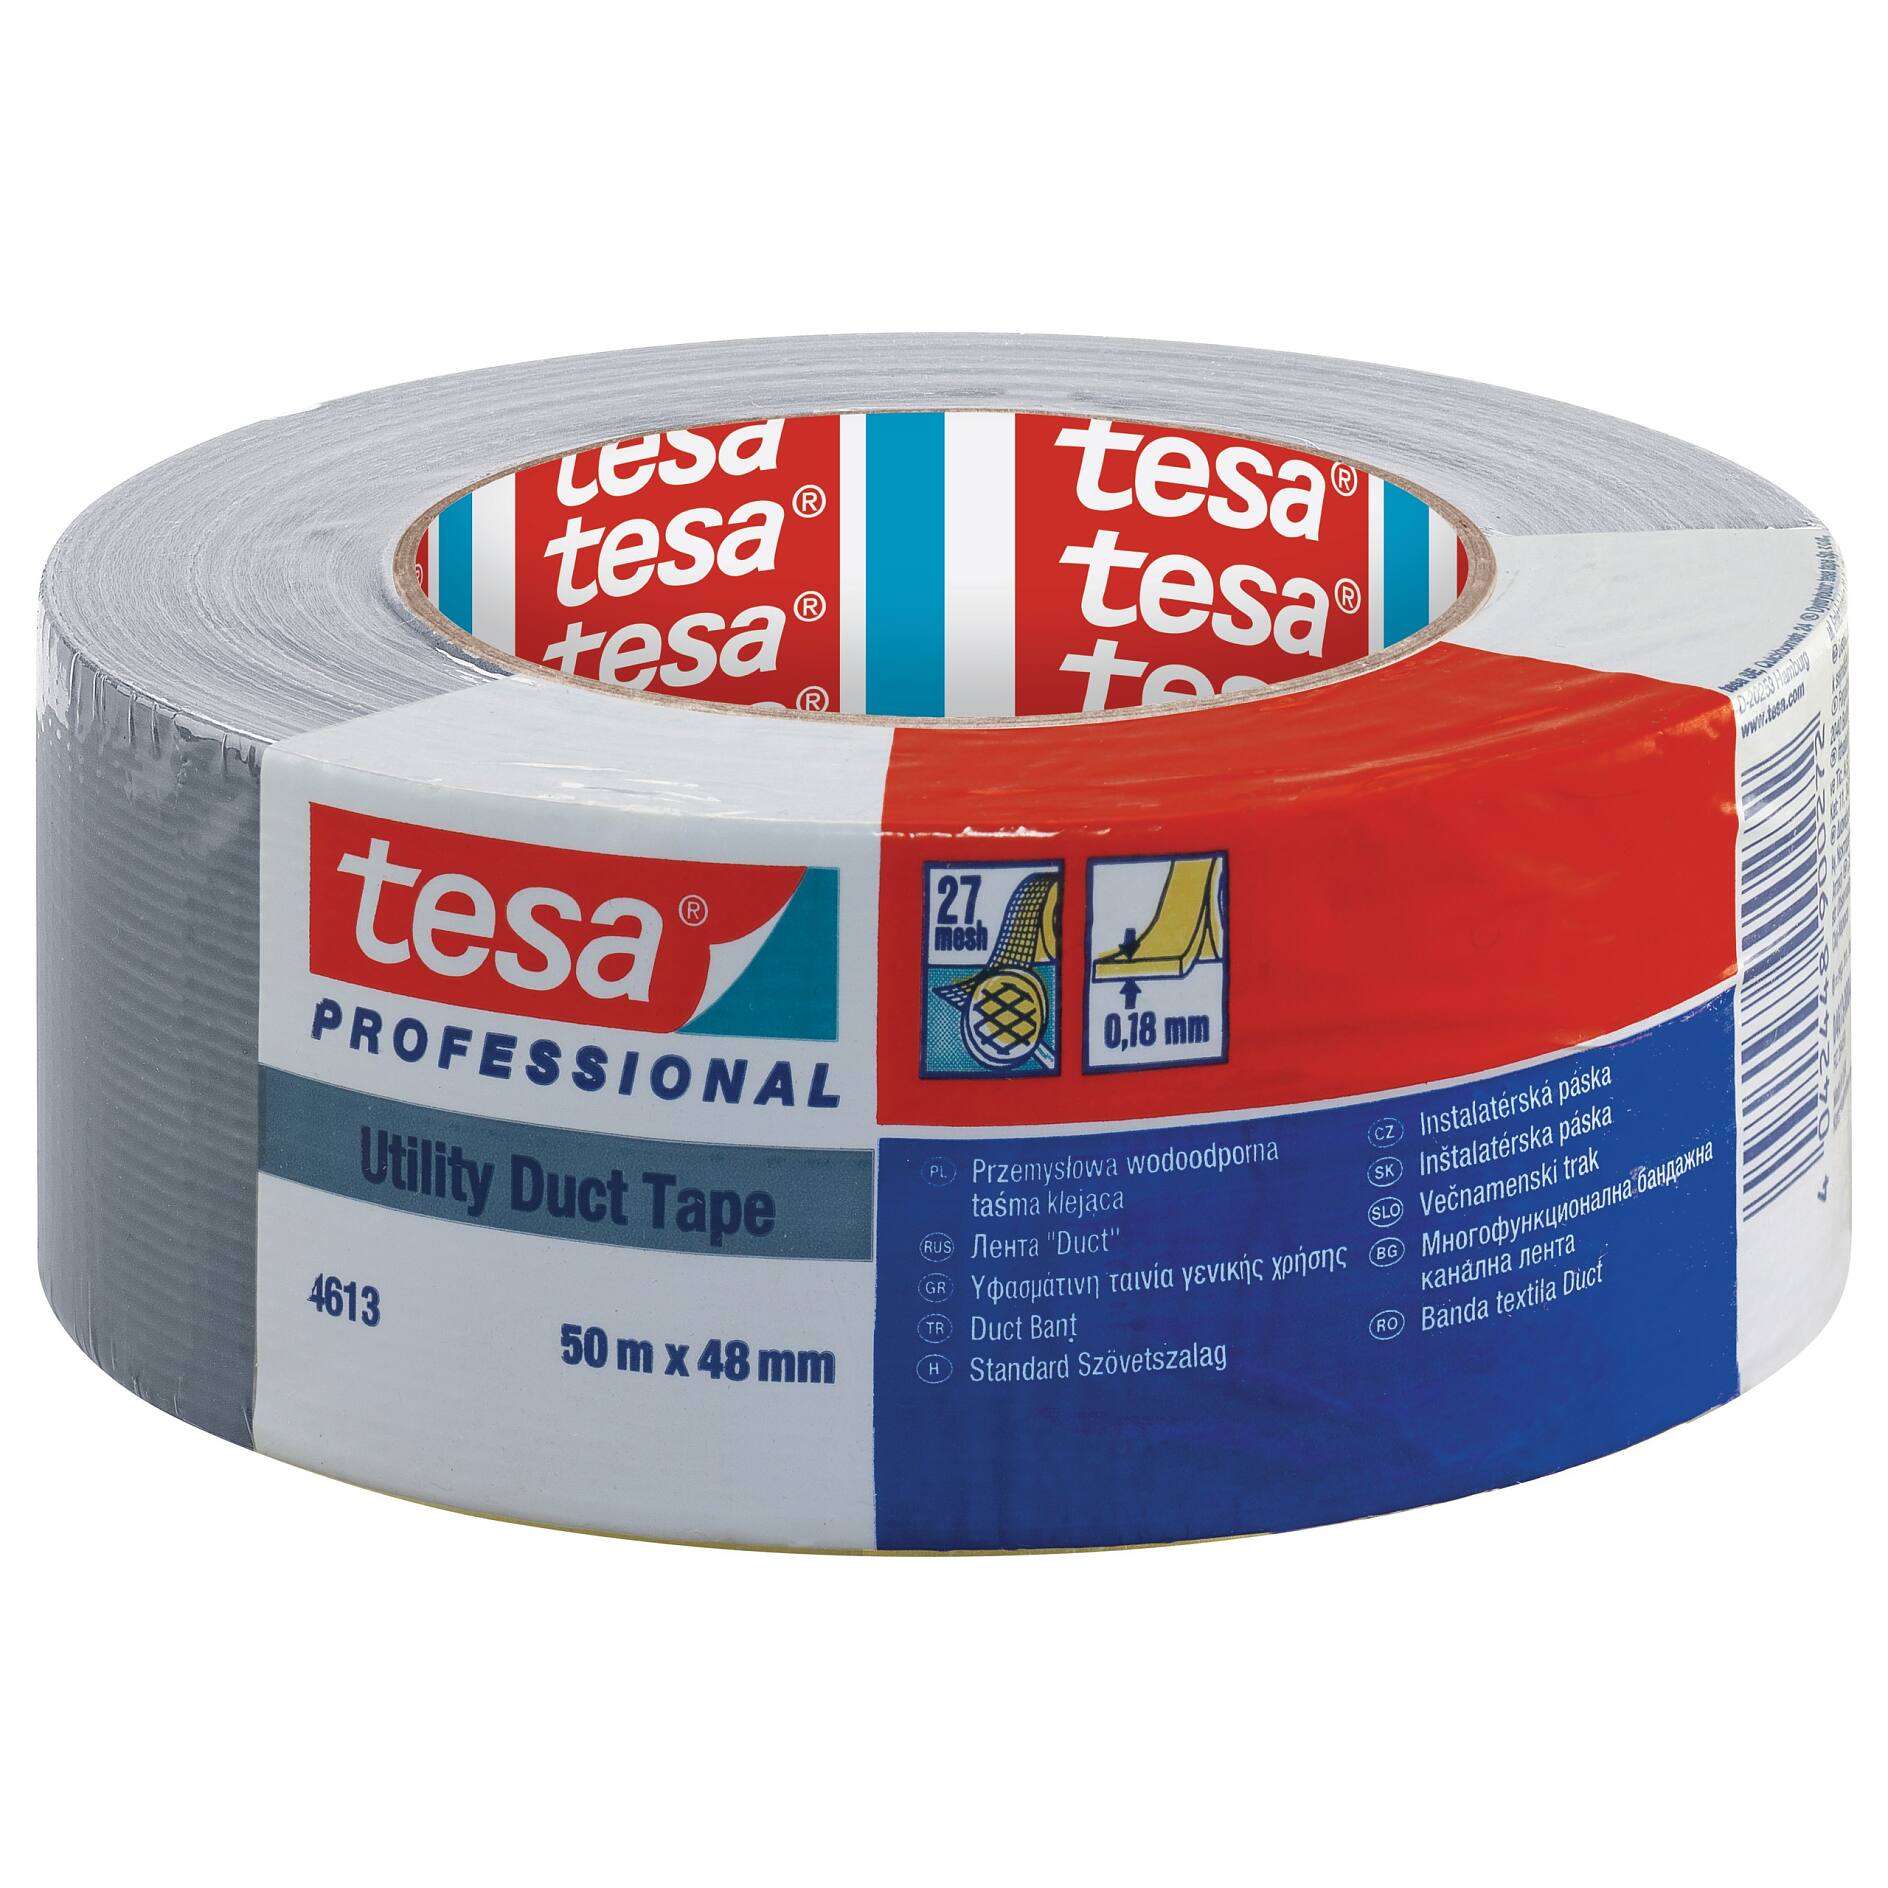 tesa® Professional 63632 Aluminium Tape Universal - tesa